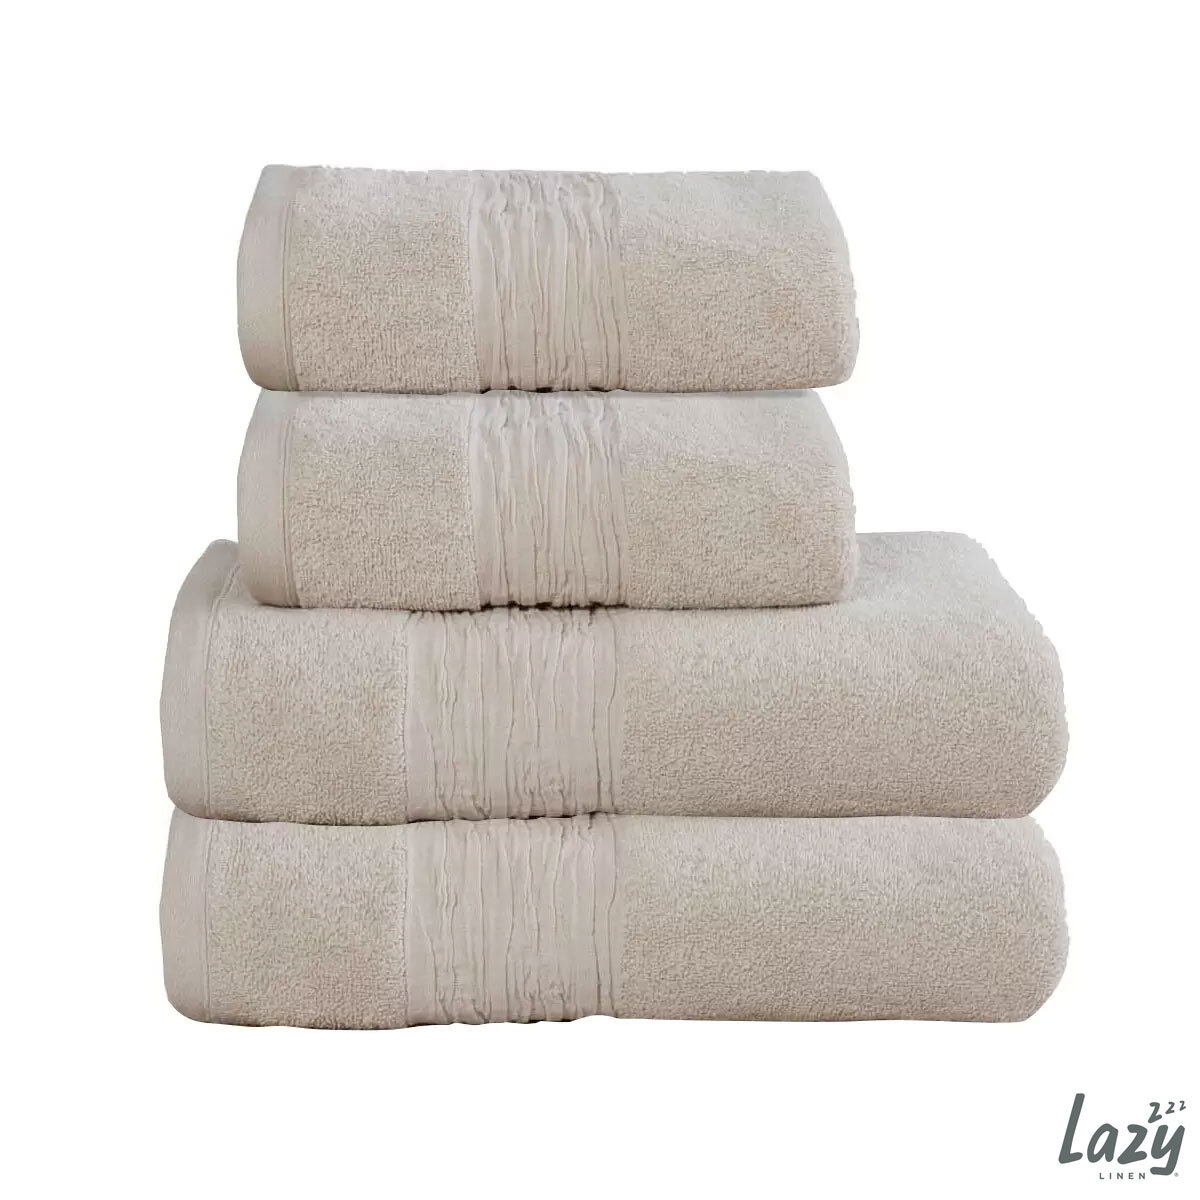  Lazy Linen 4 Piece Hand & Bath Towel Bundle in Linen, 2 x Hand Towels & 2 x Bath Towels